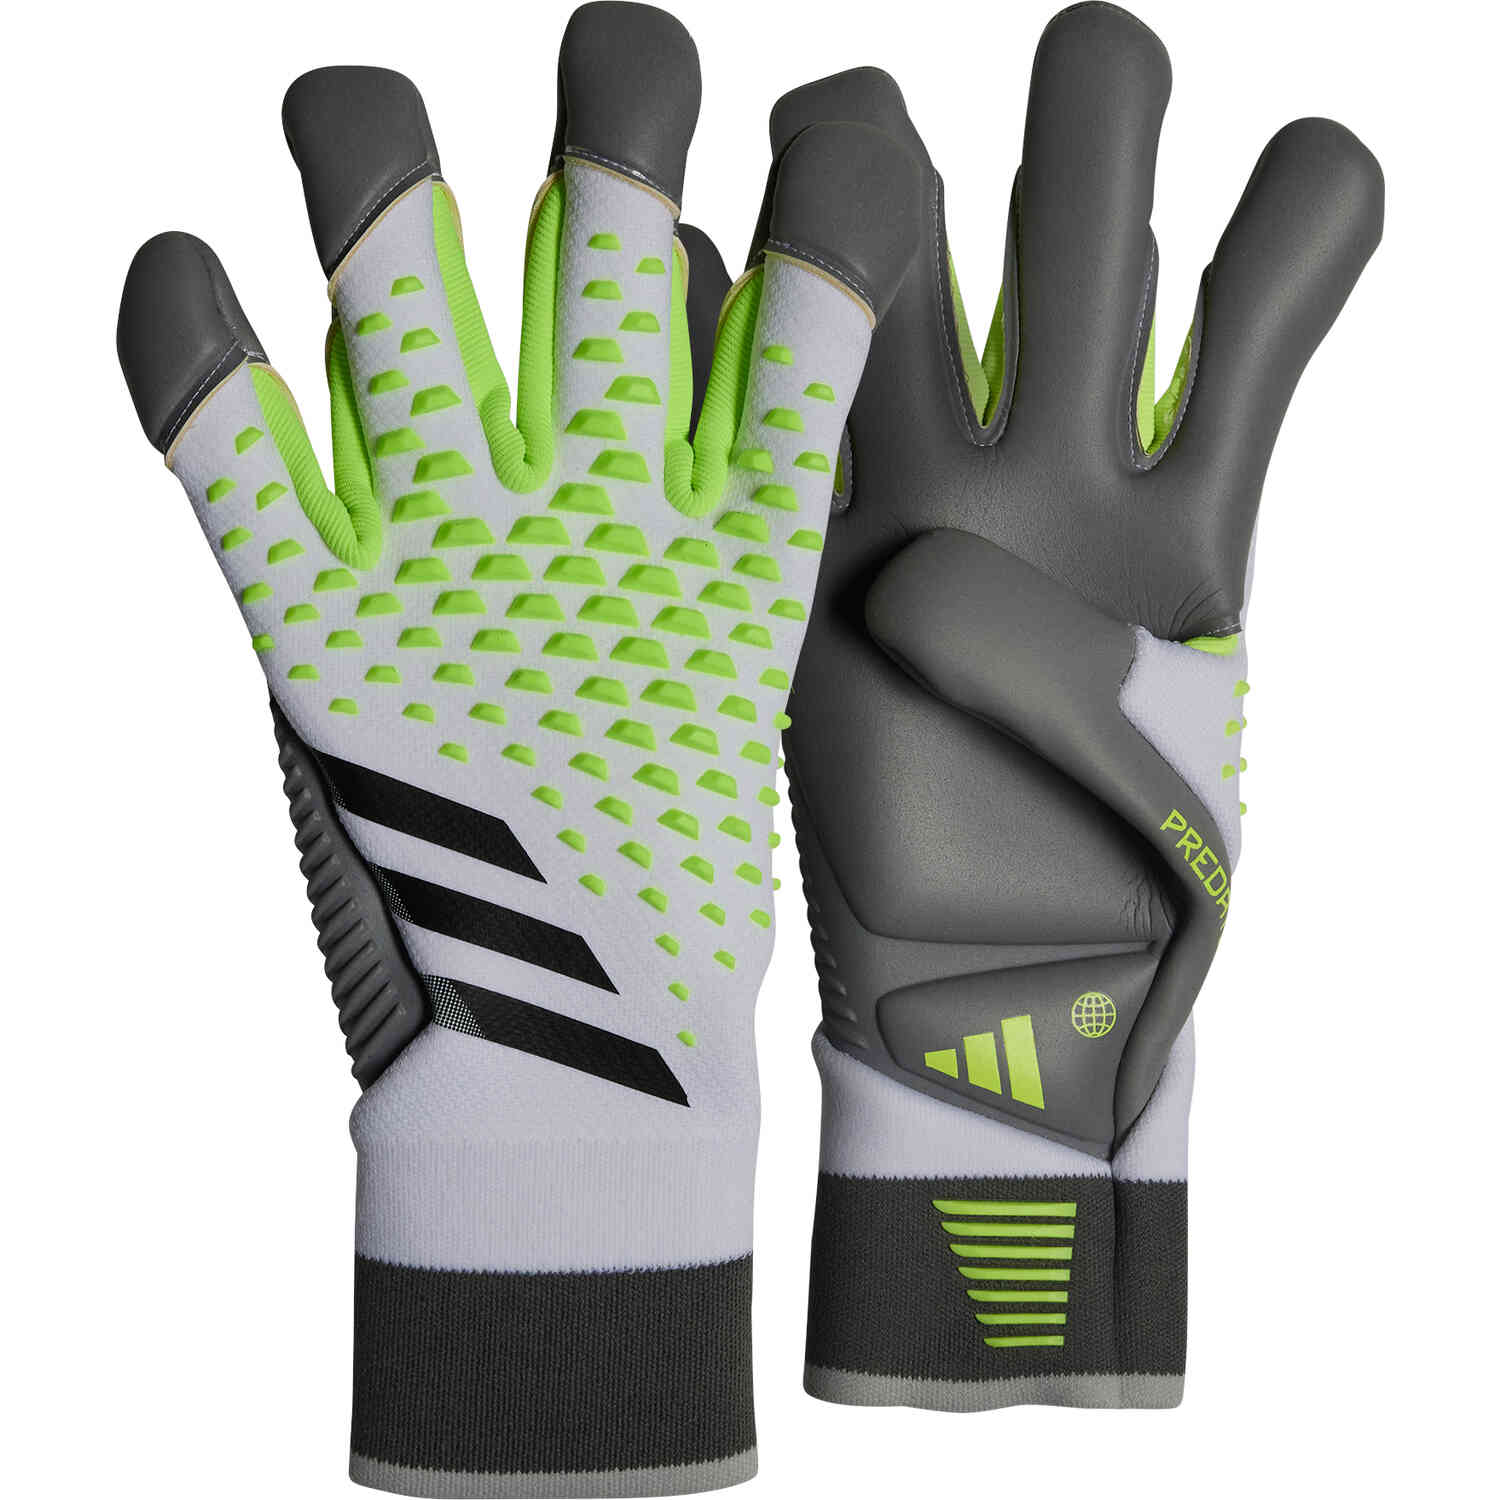 adidas Predator Edge Fingersave Pro Goalkeeper Gloves - White/Lucid Lemon